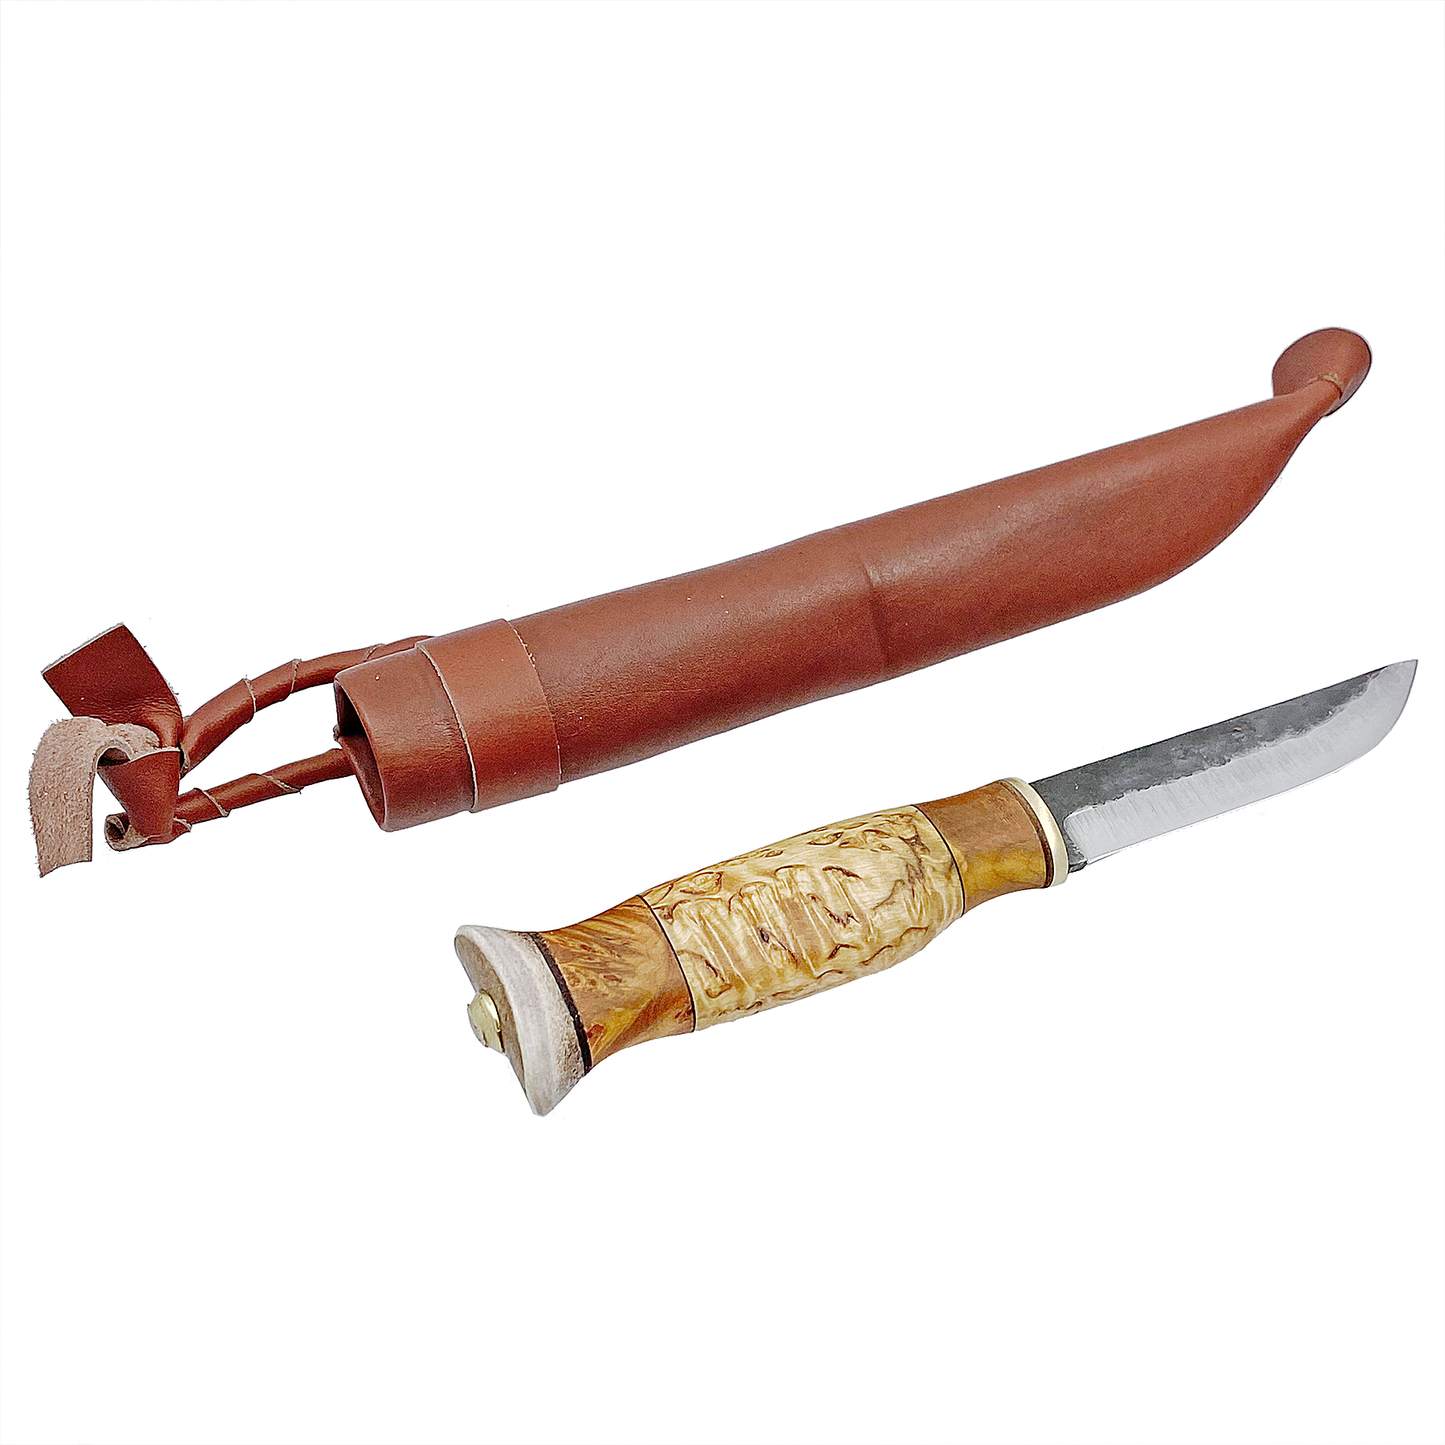 Exklusiv kniv 9-5cm långt kolstålsblad skaftet är av masurbjörk och videvril